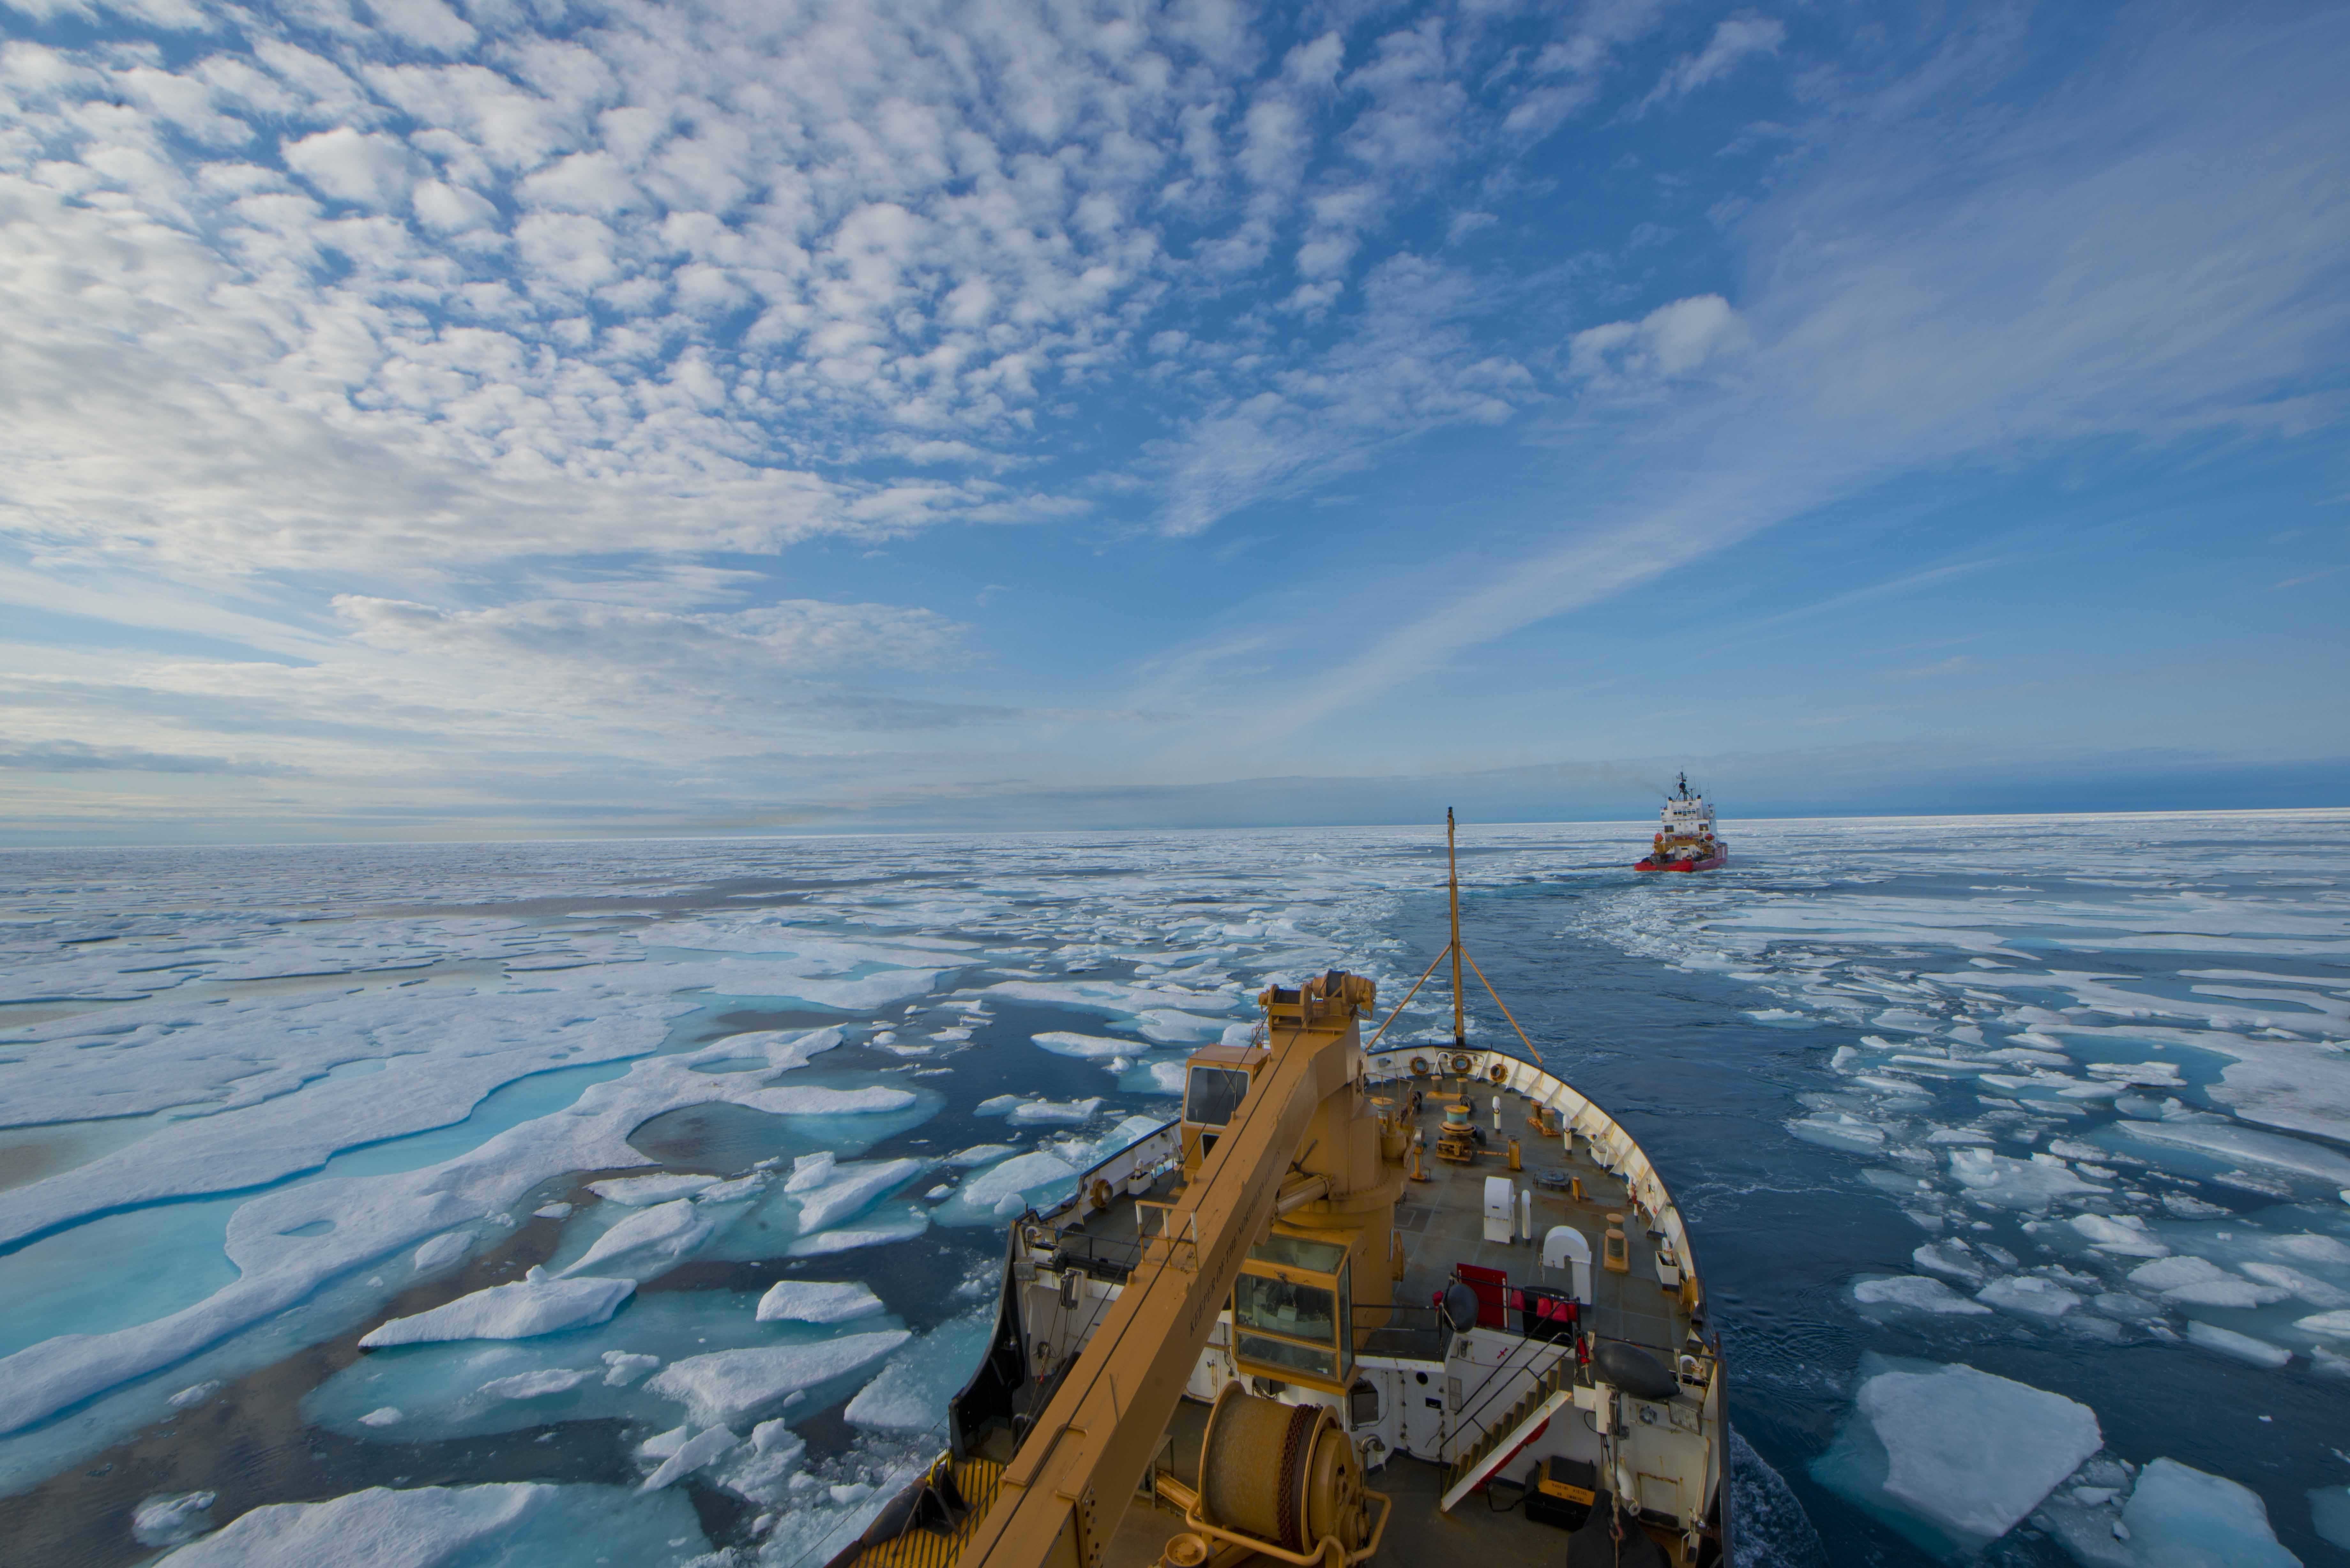 Крупное море северного ледовитого океана. Северный морской путь Северный Ледовитый океан. Северный морской путь ледоколы. Северный Ледовитый океан ледокол. Северный морской путь в Арктике.